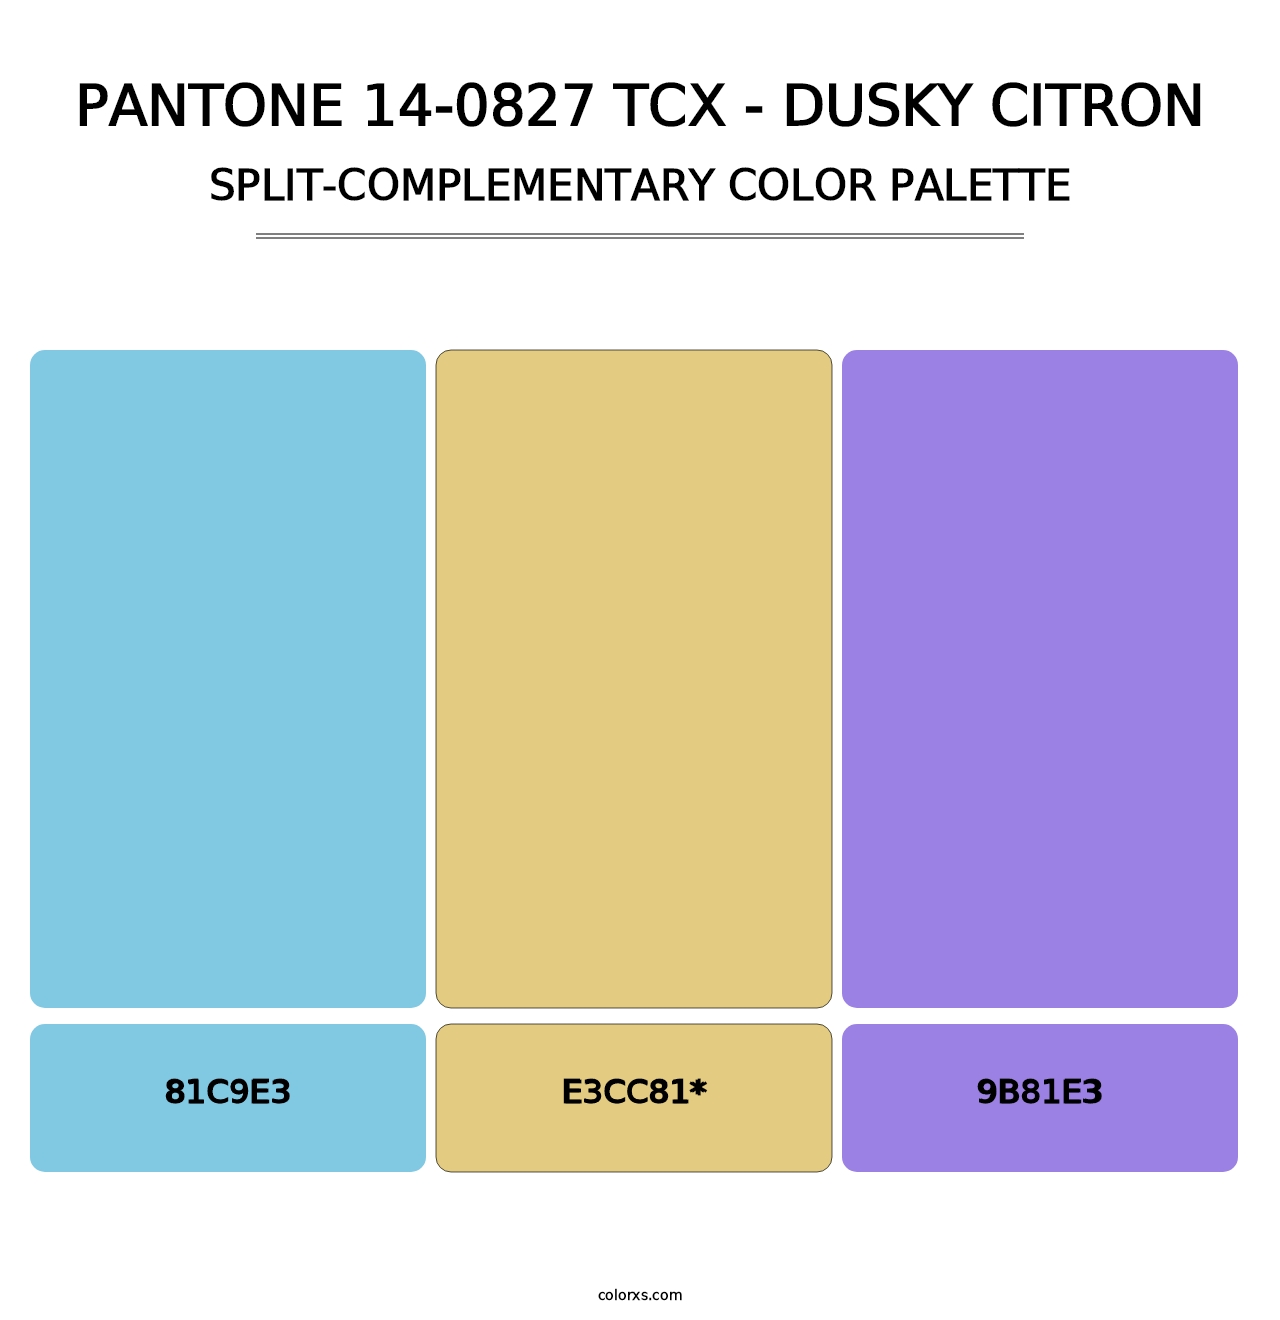 PANTONE 14-0827 TCX - Dusky Citron - Split-Complementary Color Palette